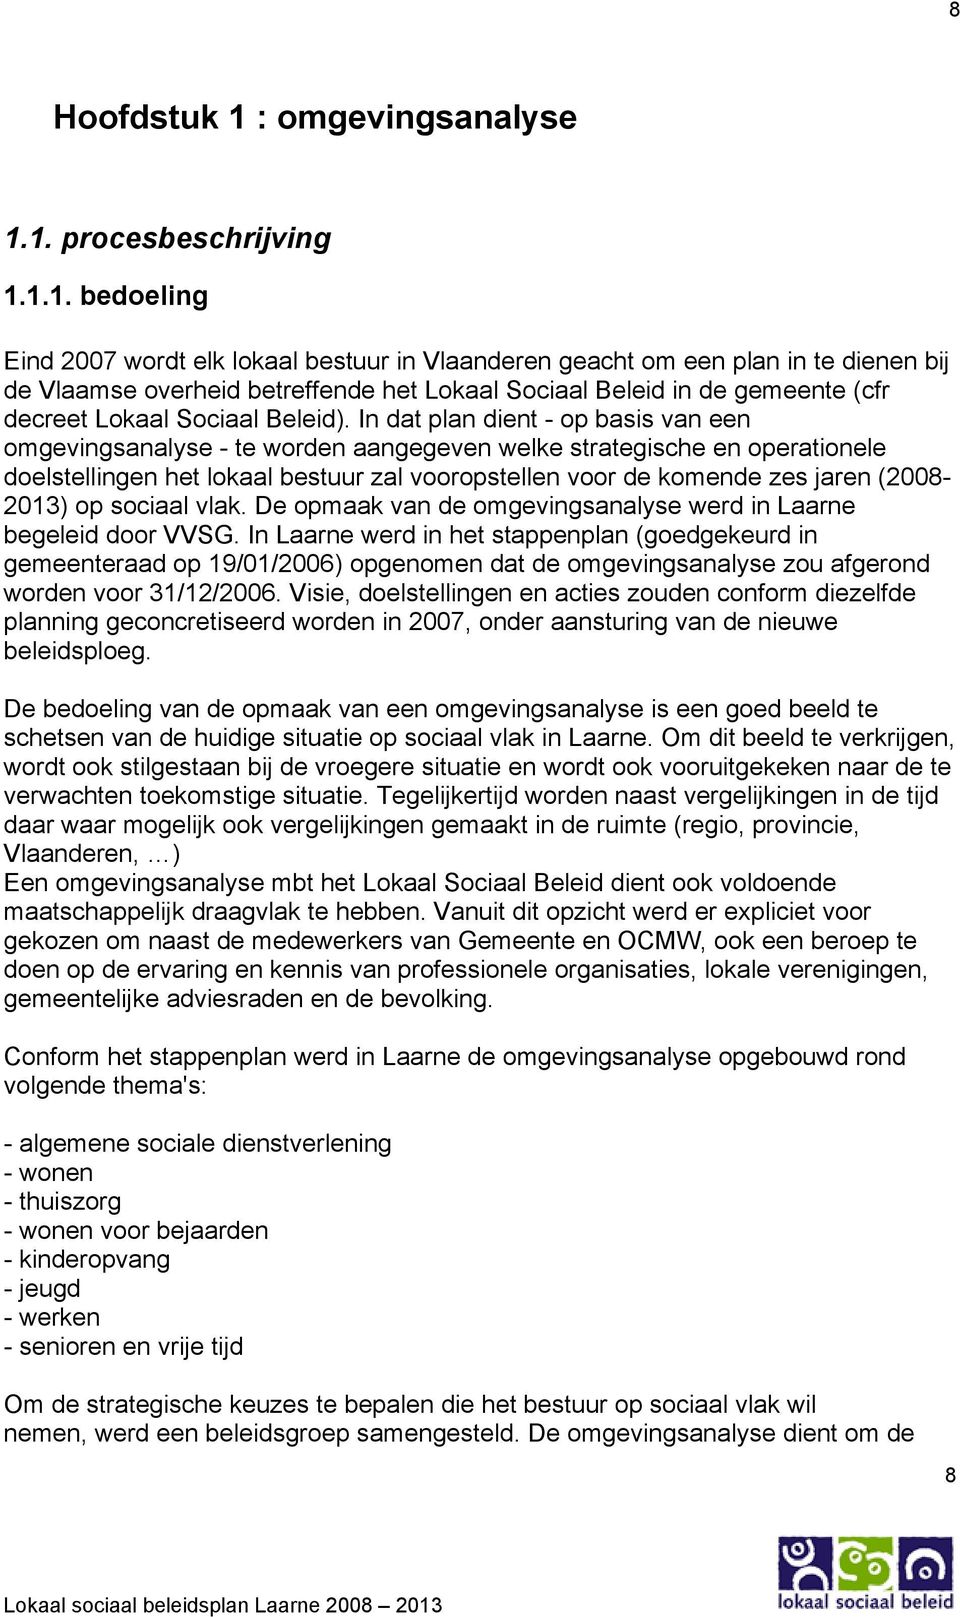 1. procesbeschrijving 1.1.1. bedoeling Eind 2007 wordt elk lokaal bestuur in Vlaanderen geacht om een plan in te dienen bij de Vlaamse overheid betreffende het Lokaal Sociaal Beleid in de gemeente